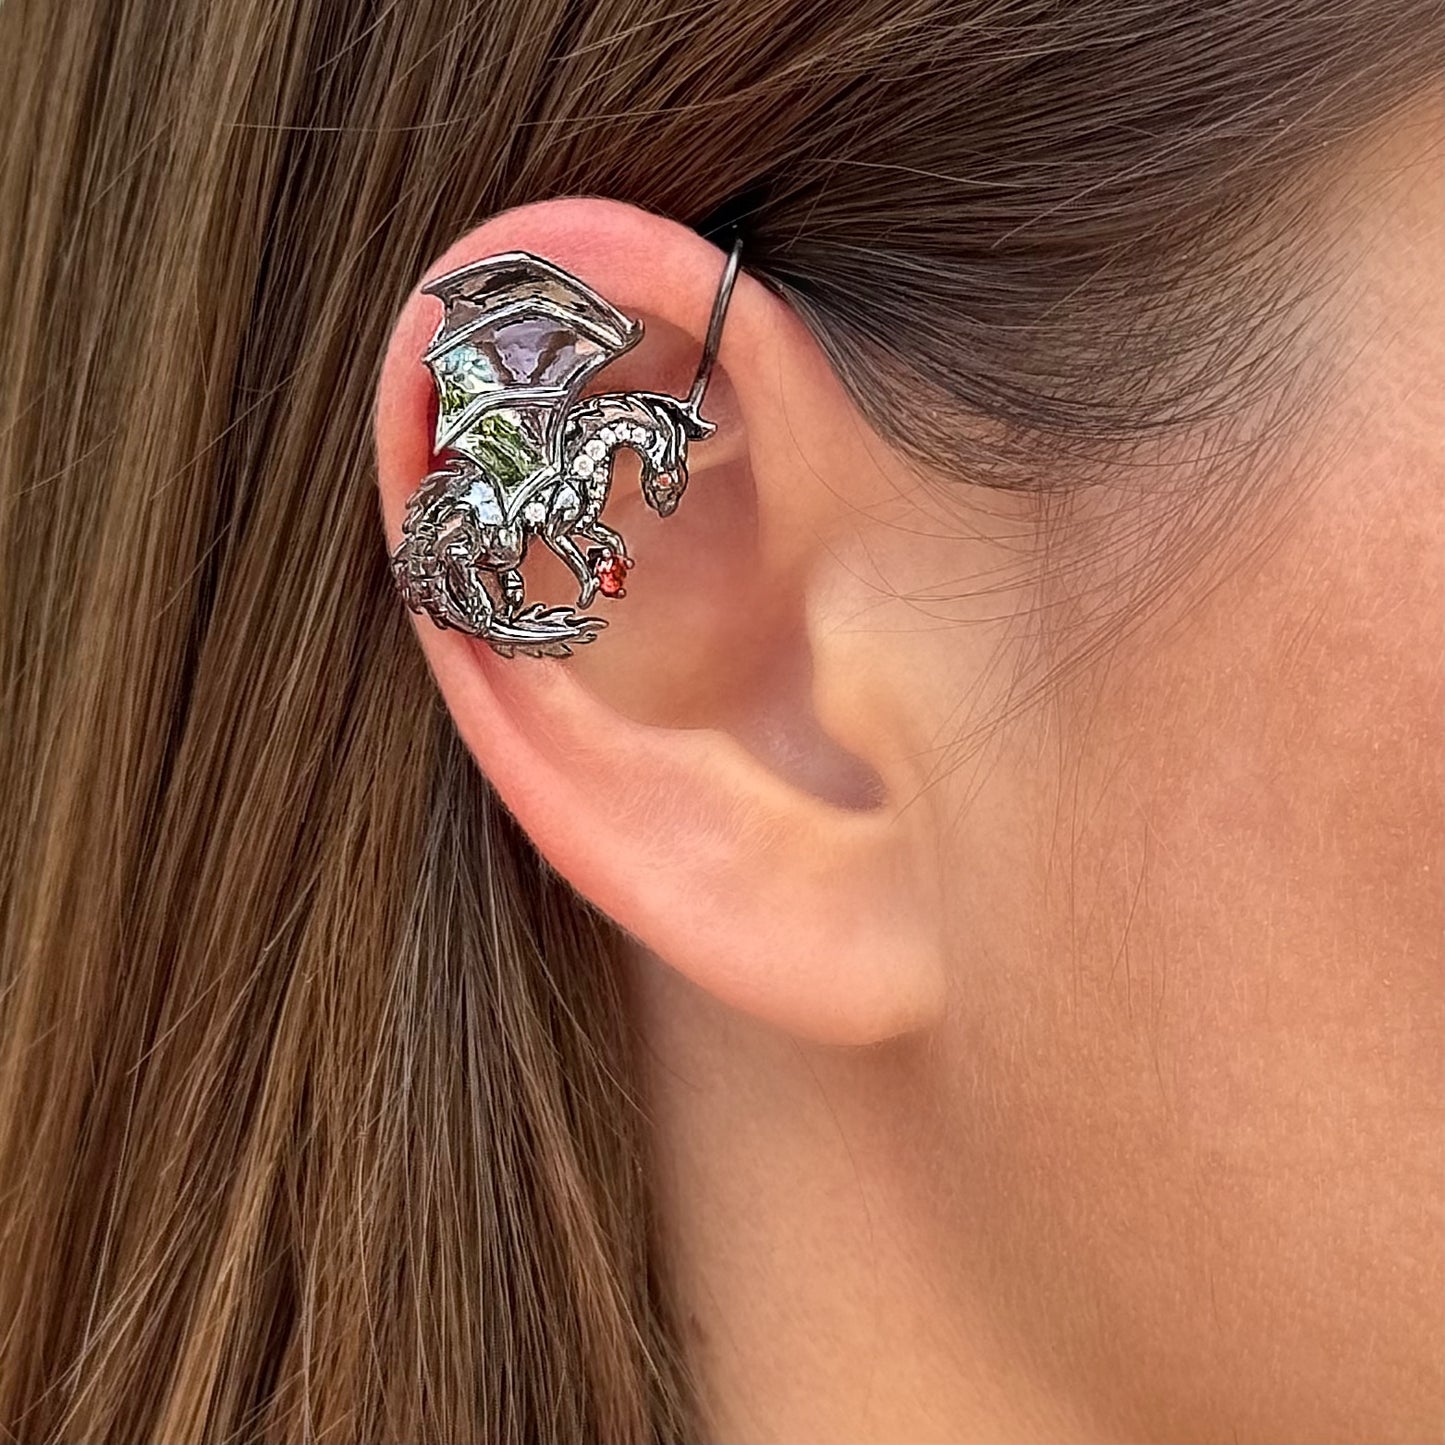 Dragon non-pierced ear cuff with CZ diamonds -  Rose Gold